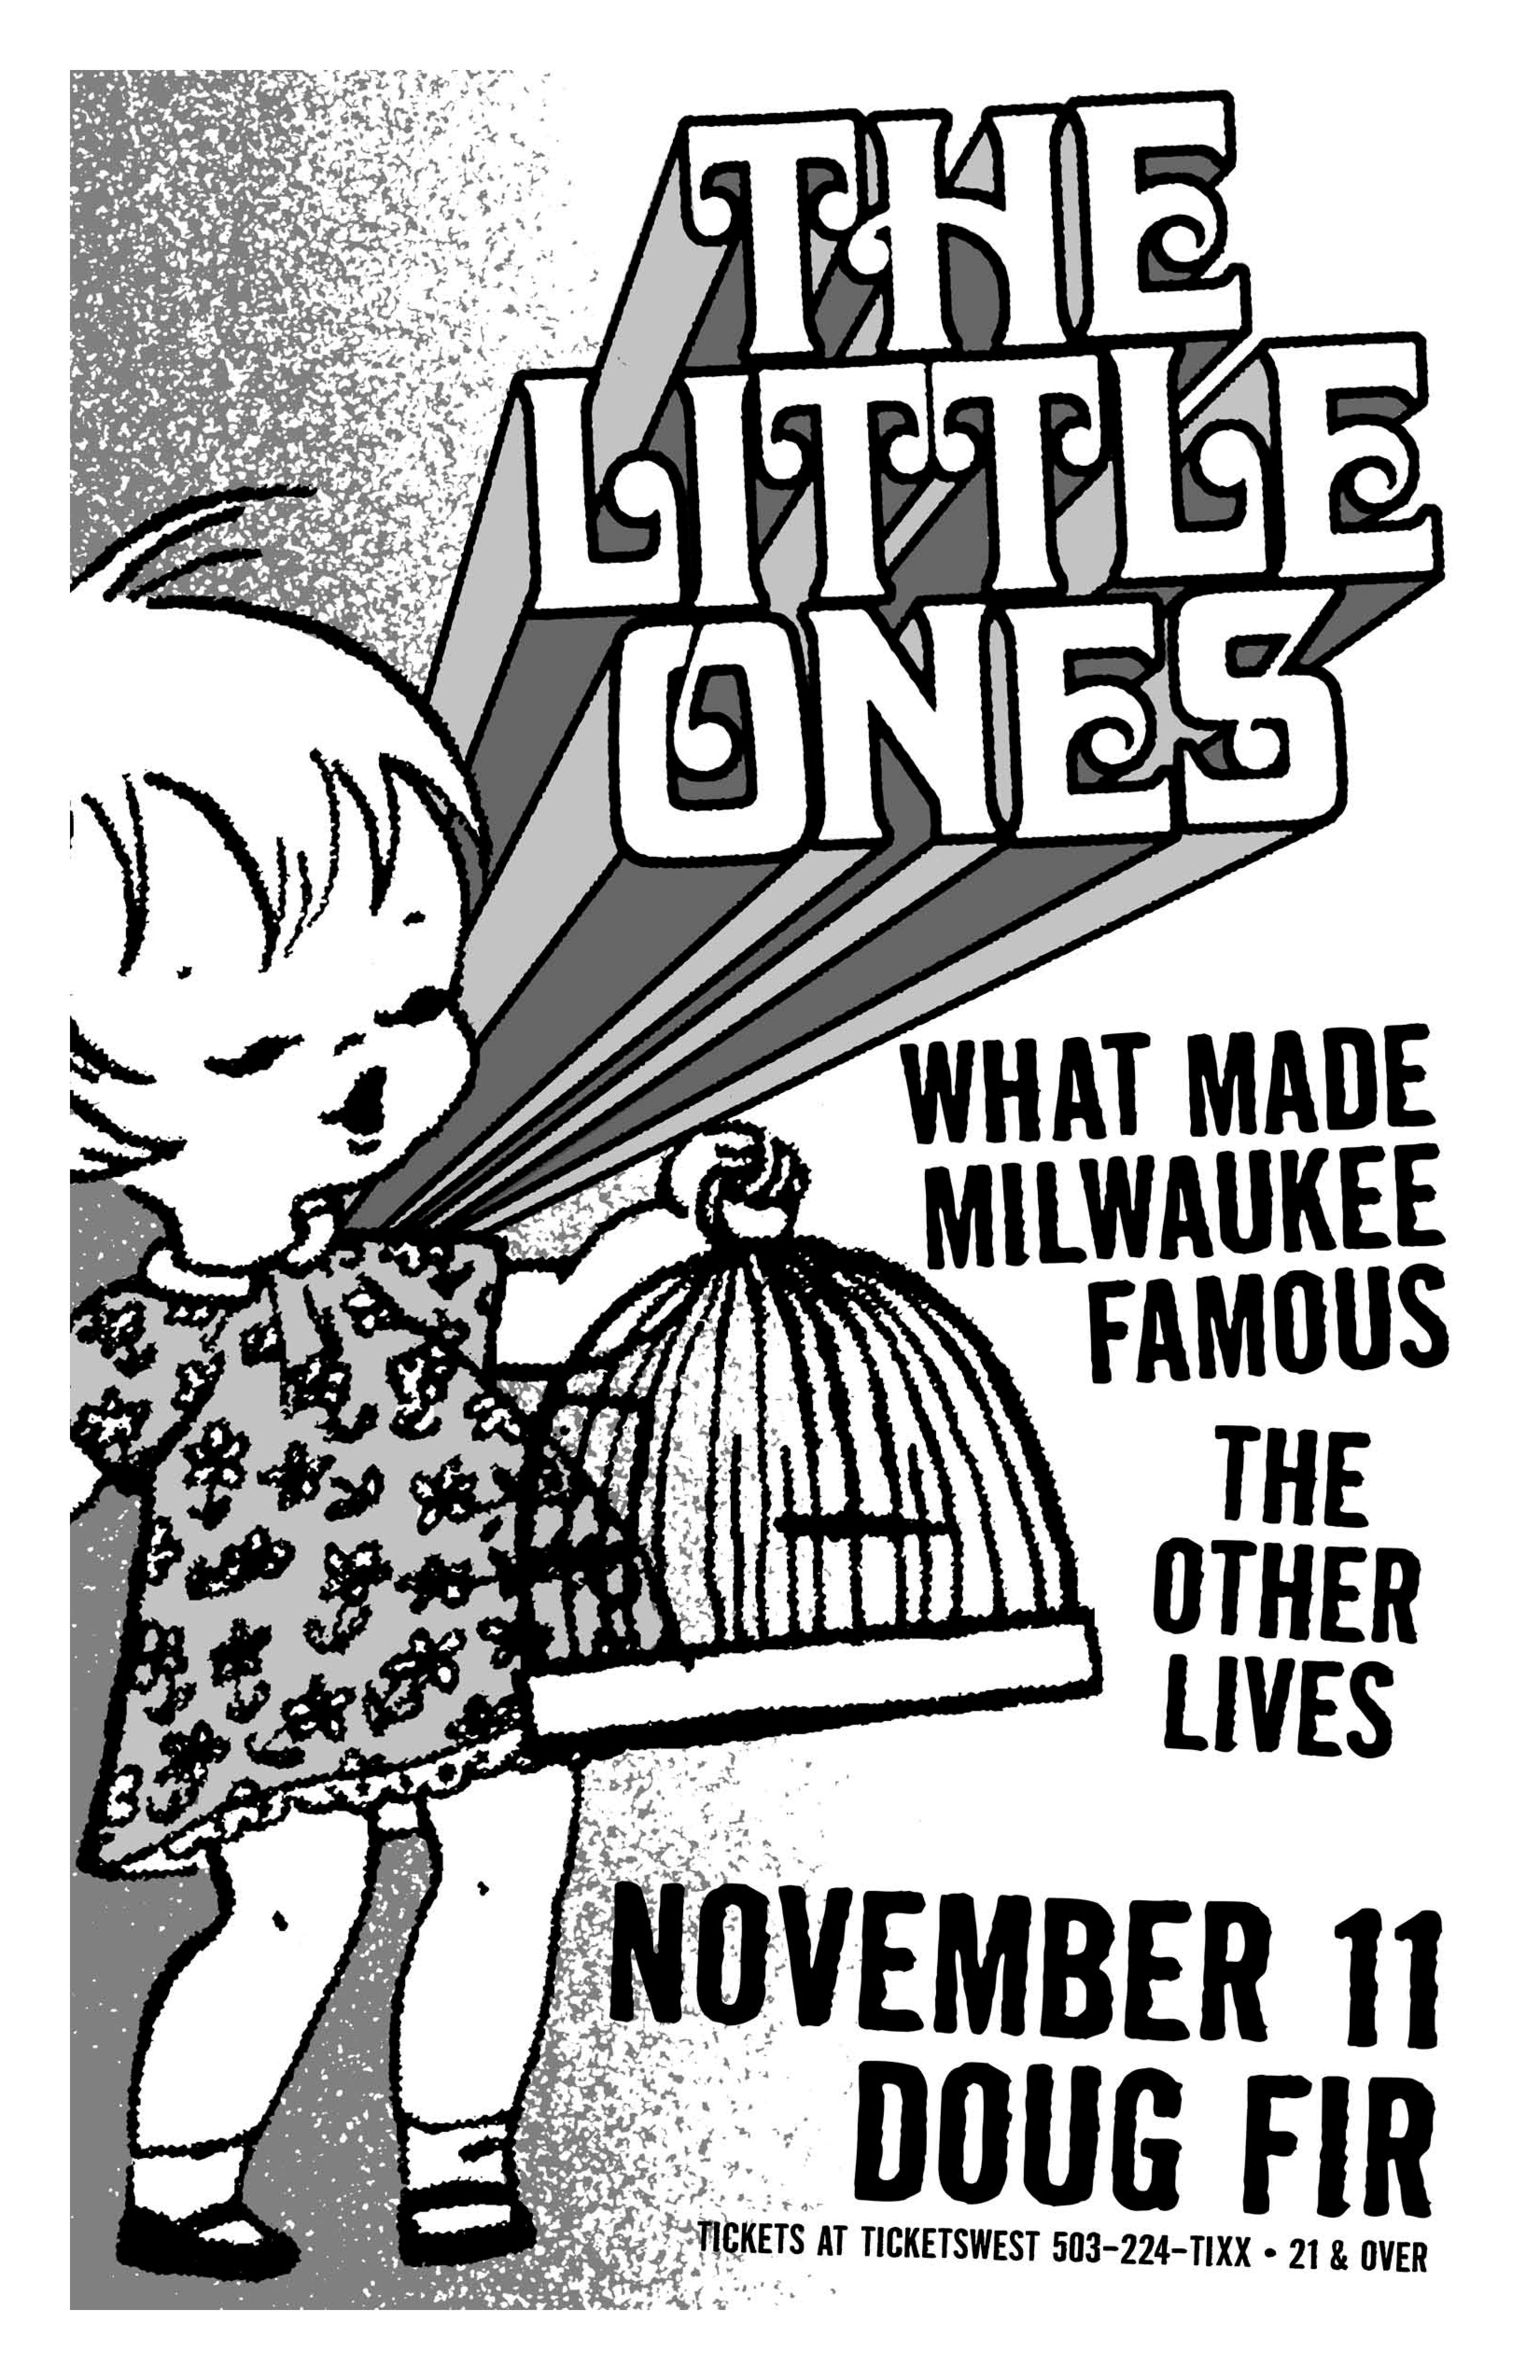 MXP-205.12 Little Ones 2008 Doug Fir  Nov 11 Concert Poster